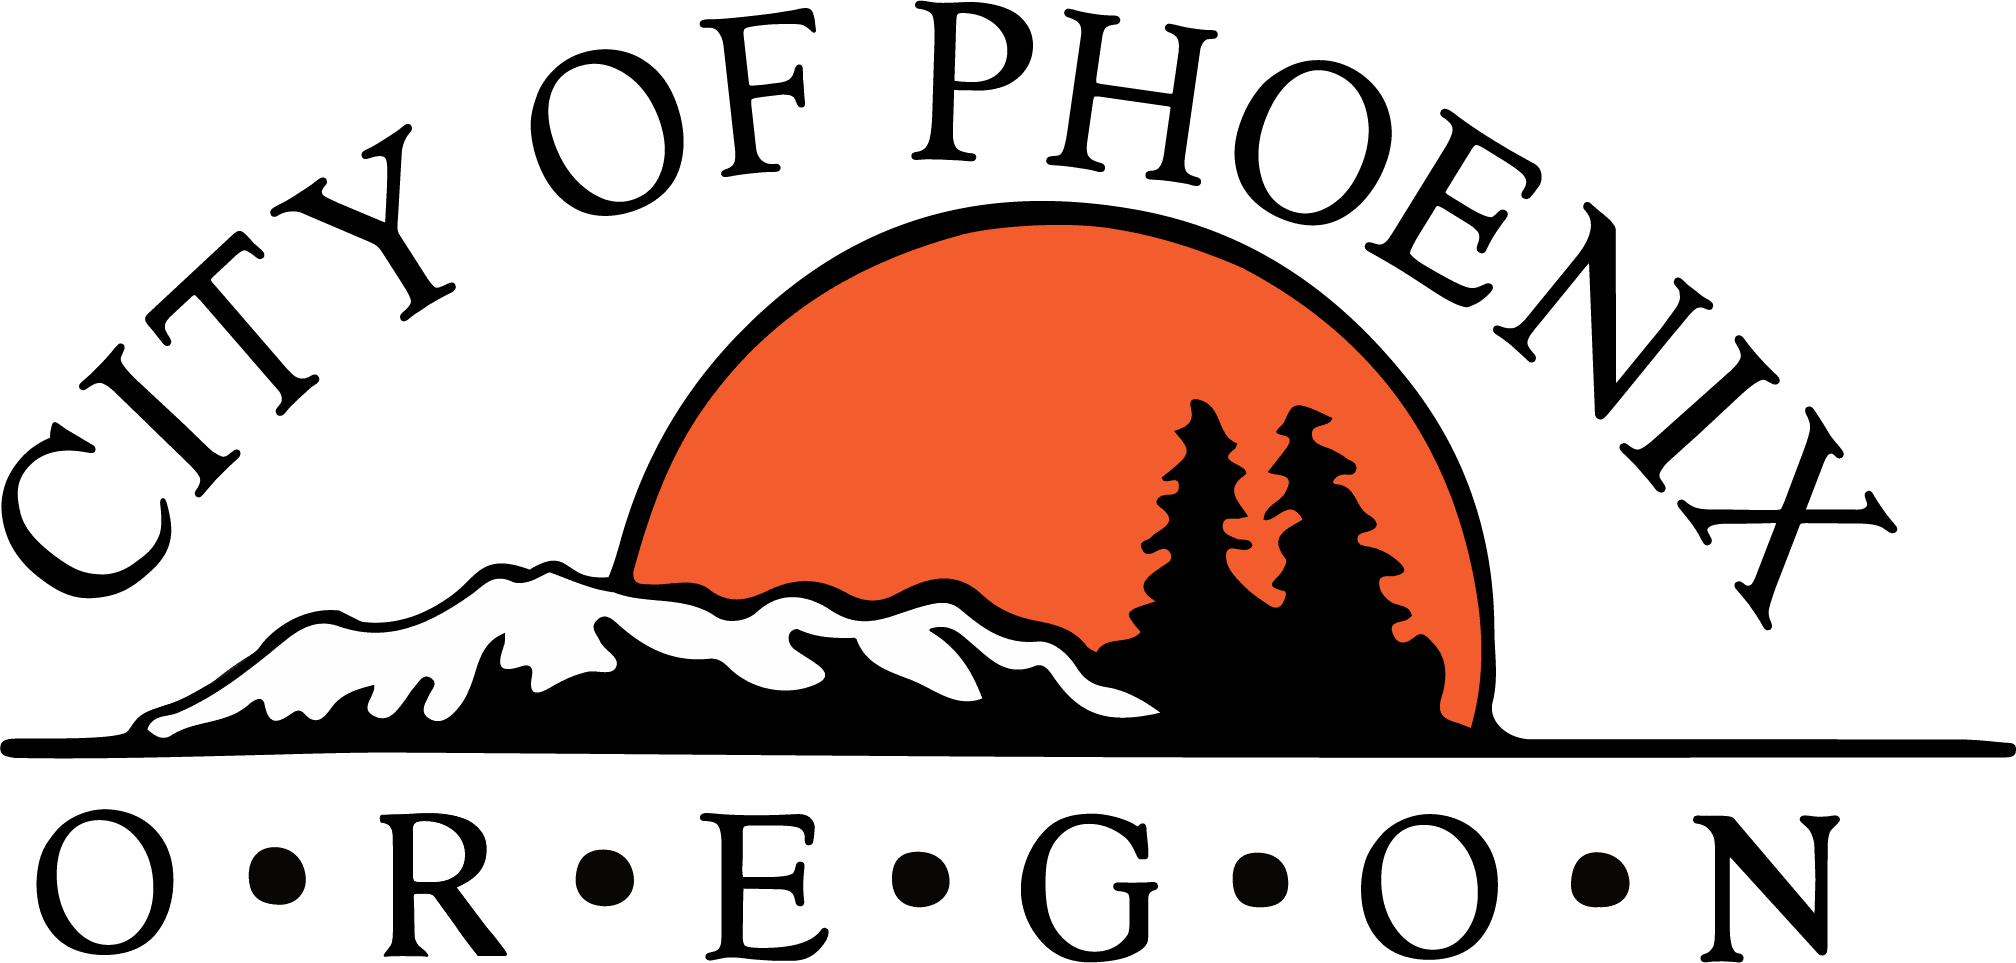 City-of-Phoenix-logo